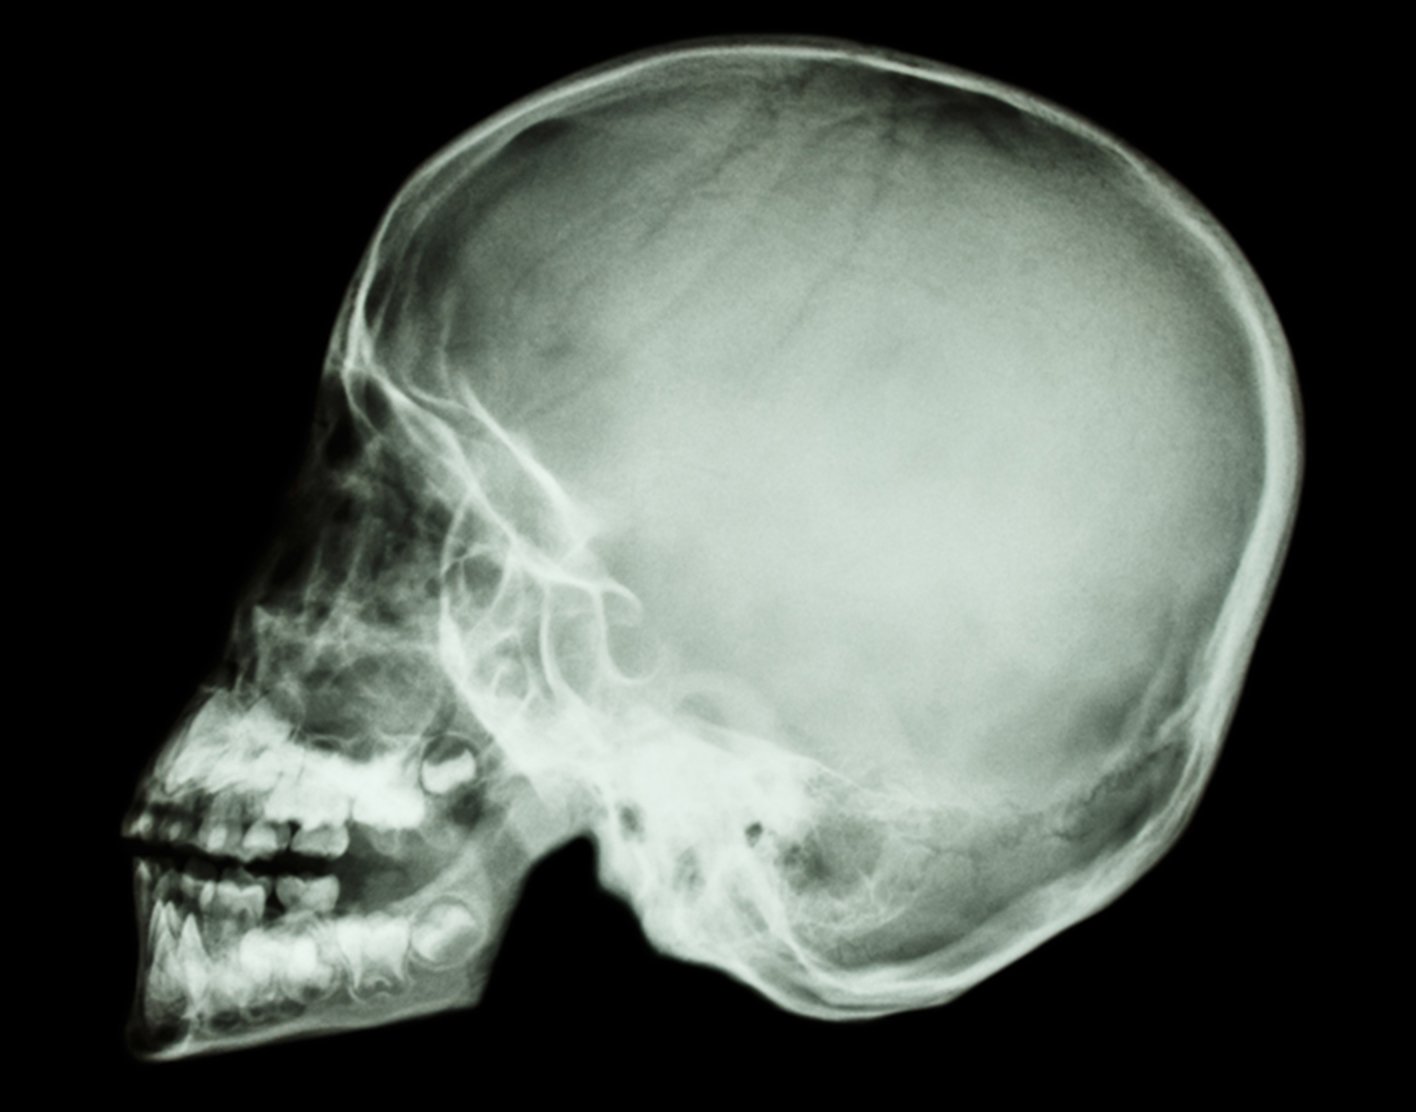 skull-x-ray-708x556-2x